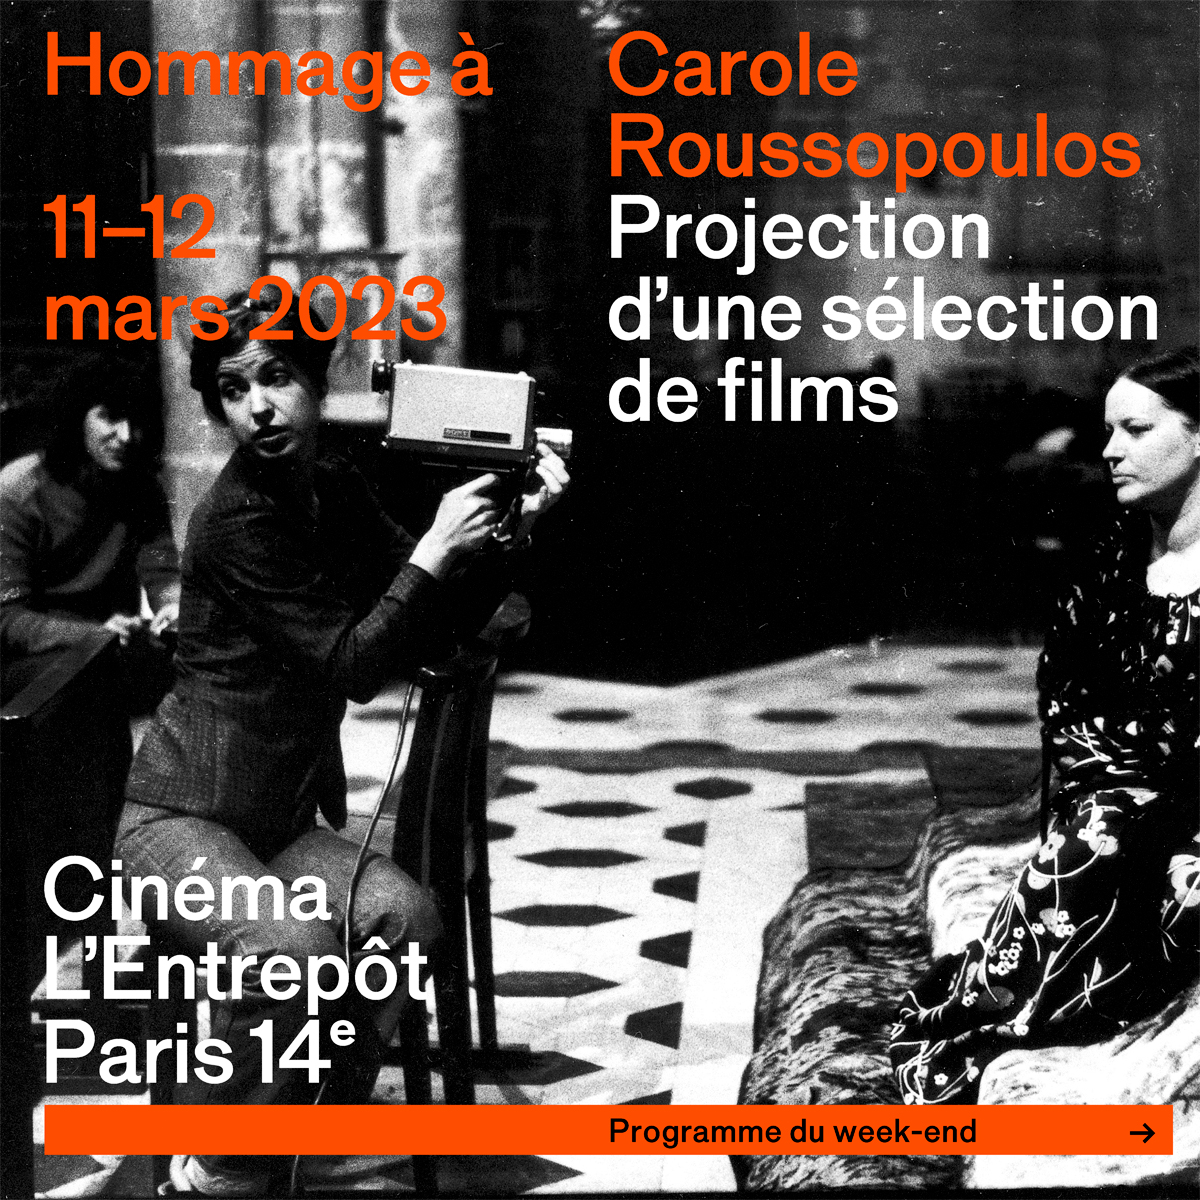 Une programmation exceptionnelle de films de Carole Roussopoulos à l’Entrepôt les 10-11 & 12 mars 2023